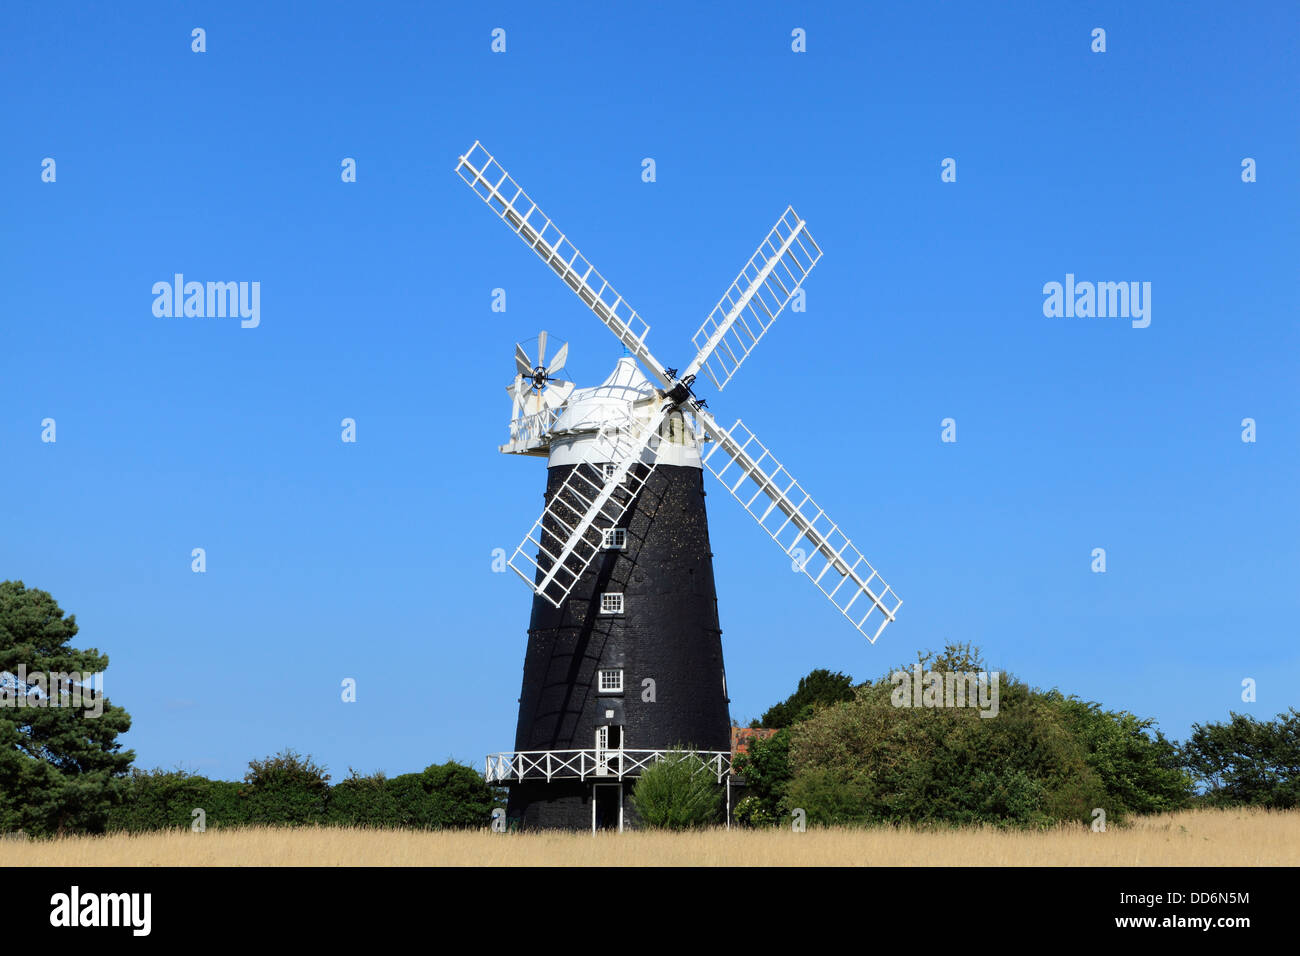 Burnham Overy Windmühle, Turm und GAP Mühle, 1816, malte Norfolk England UK Englisch Ziegel überragte Windmühlen Stockfoto